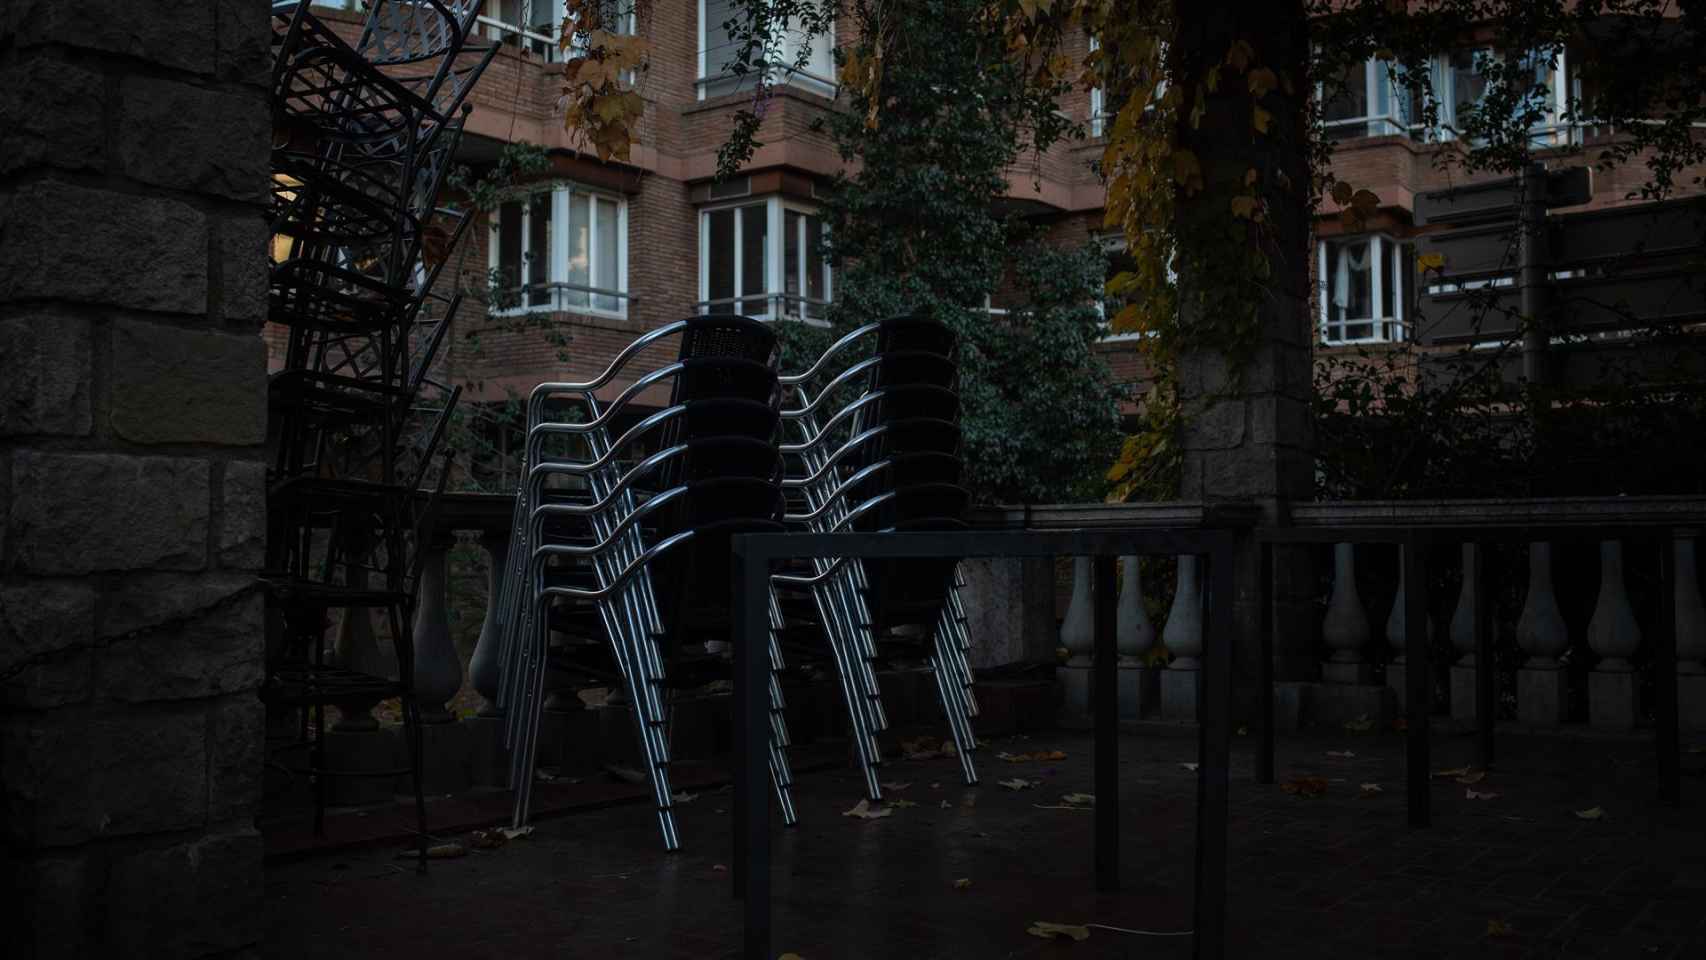 Sillas vacías en una terraza de una céntrica calle de Barcelona, a 21 de diciembre de 2020 / EUROPA PRESS - David Zorrakino